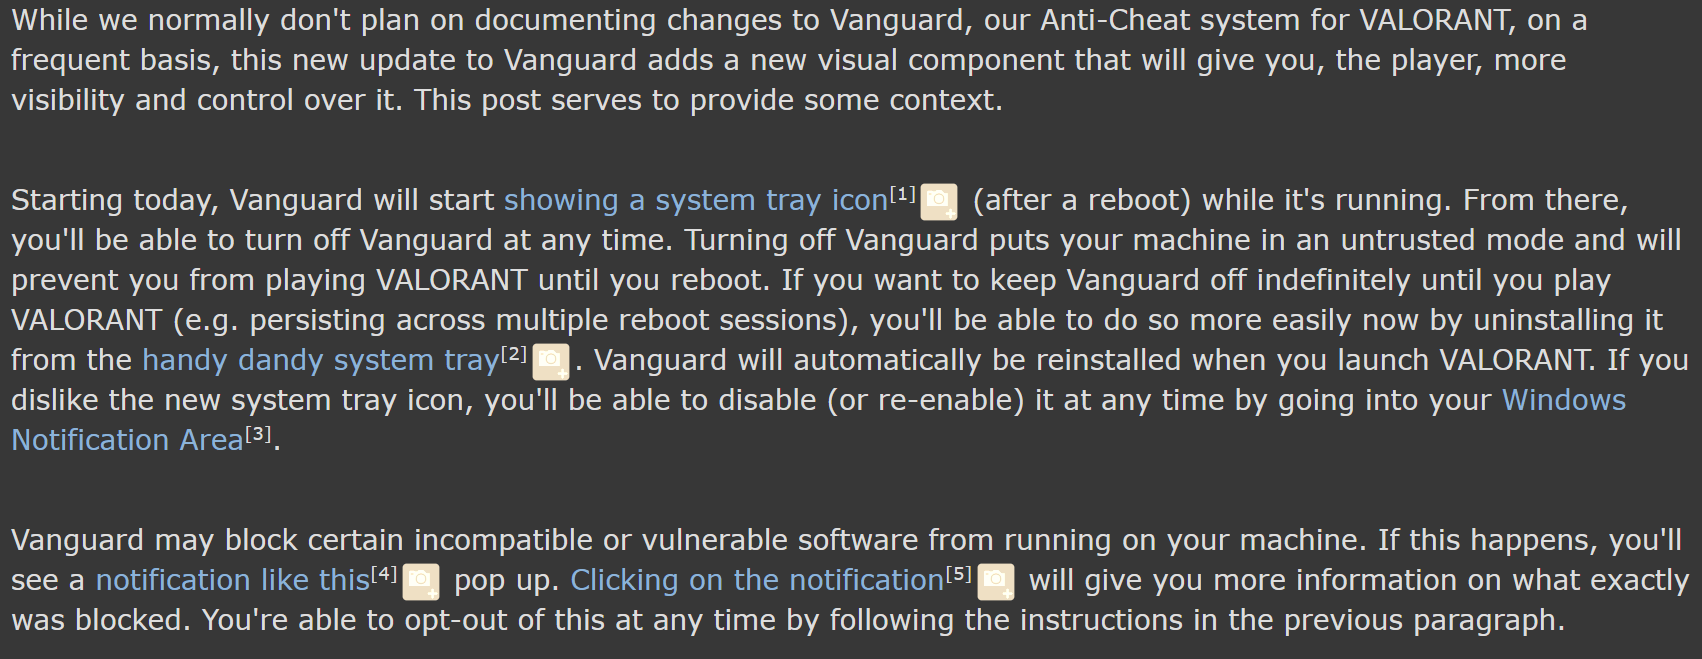 Reddit : Valorant about vanguard